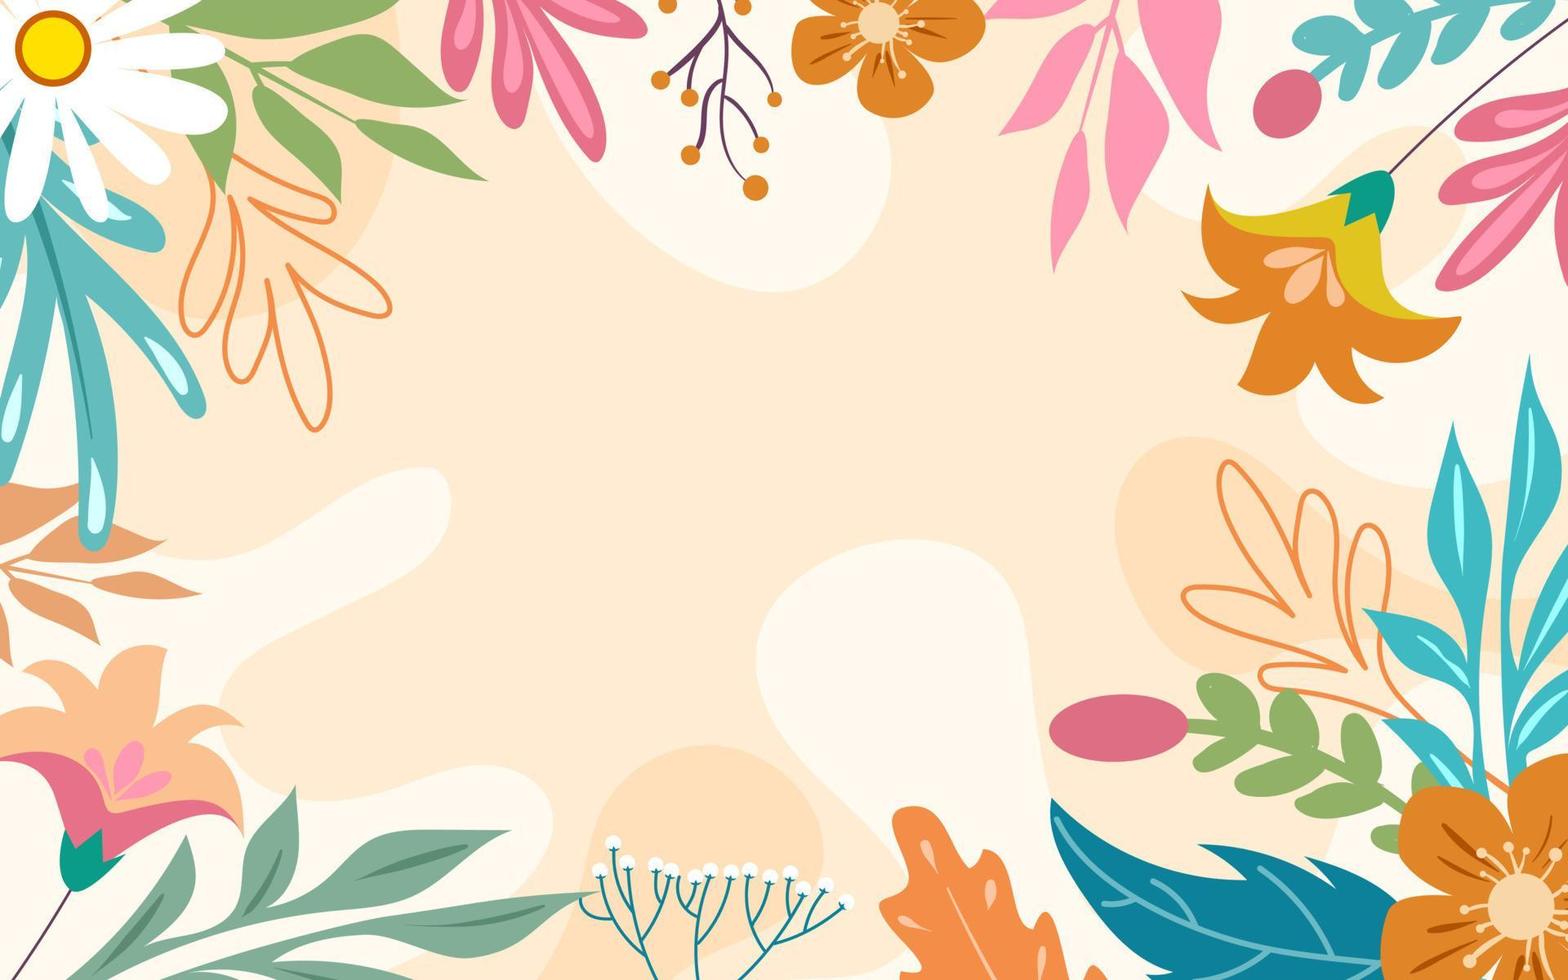 Nature Floral Background Flat Design vector